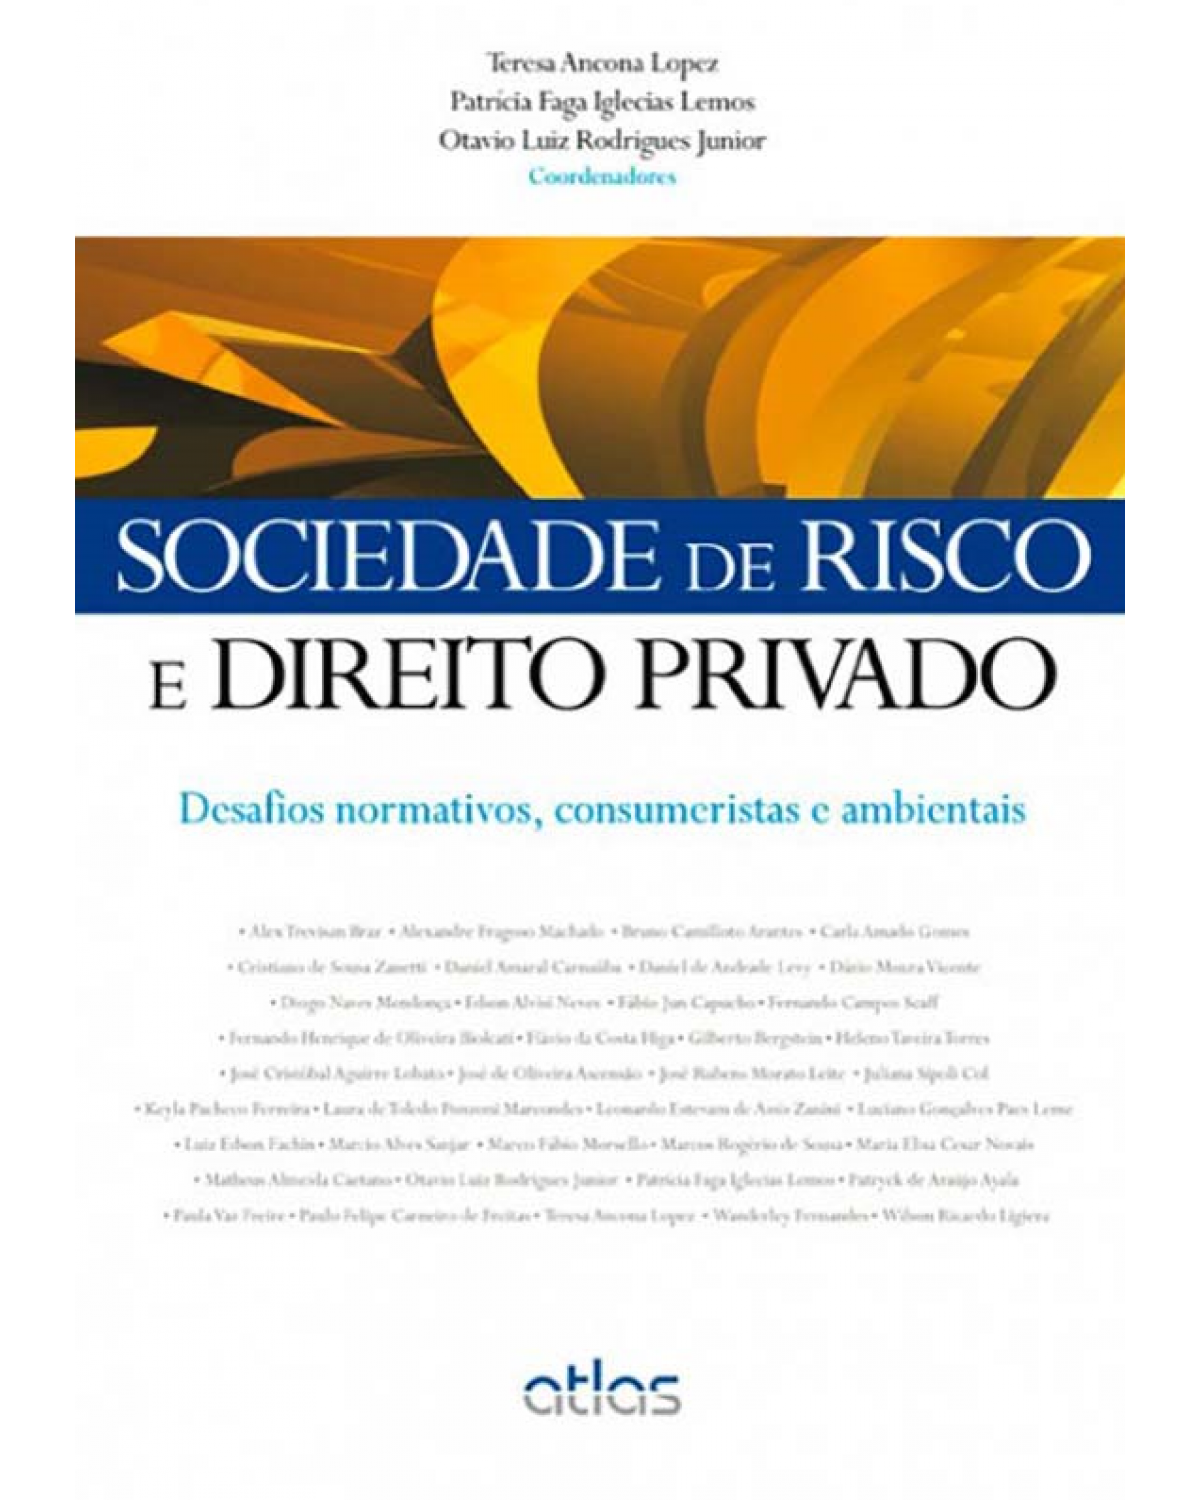 Sociedade de risco e direito privado - Desafios normativos, consumeristas e ambientais - 1ª Edição | 2013